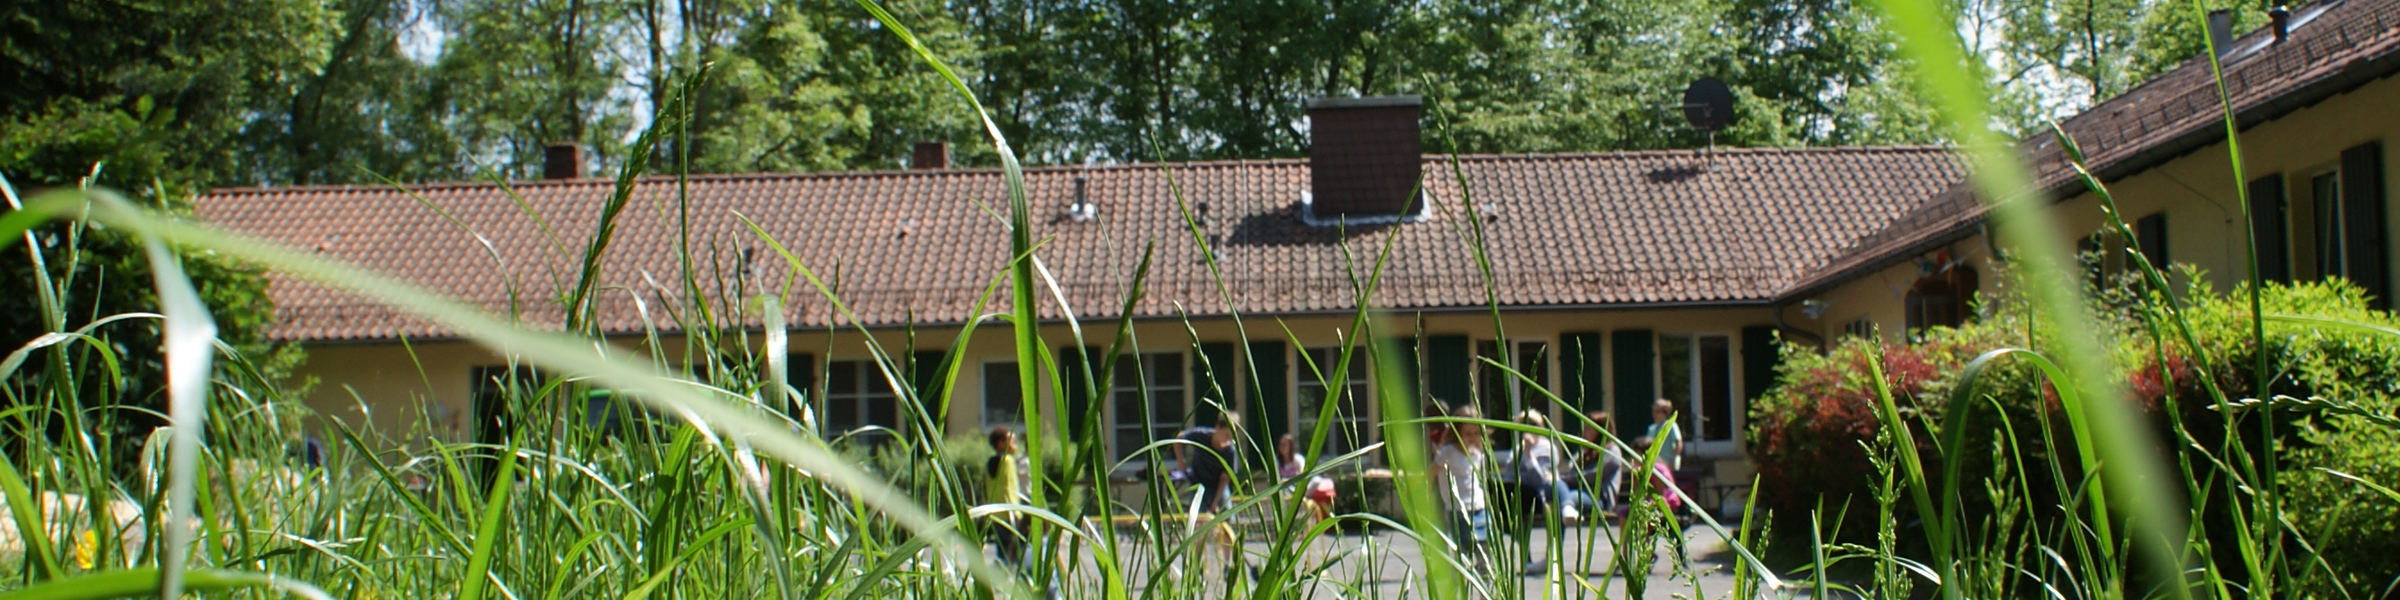 Blick durch grüne Grashalme auf das Albert-Schweitzer-Haus